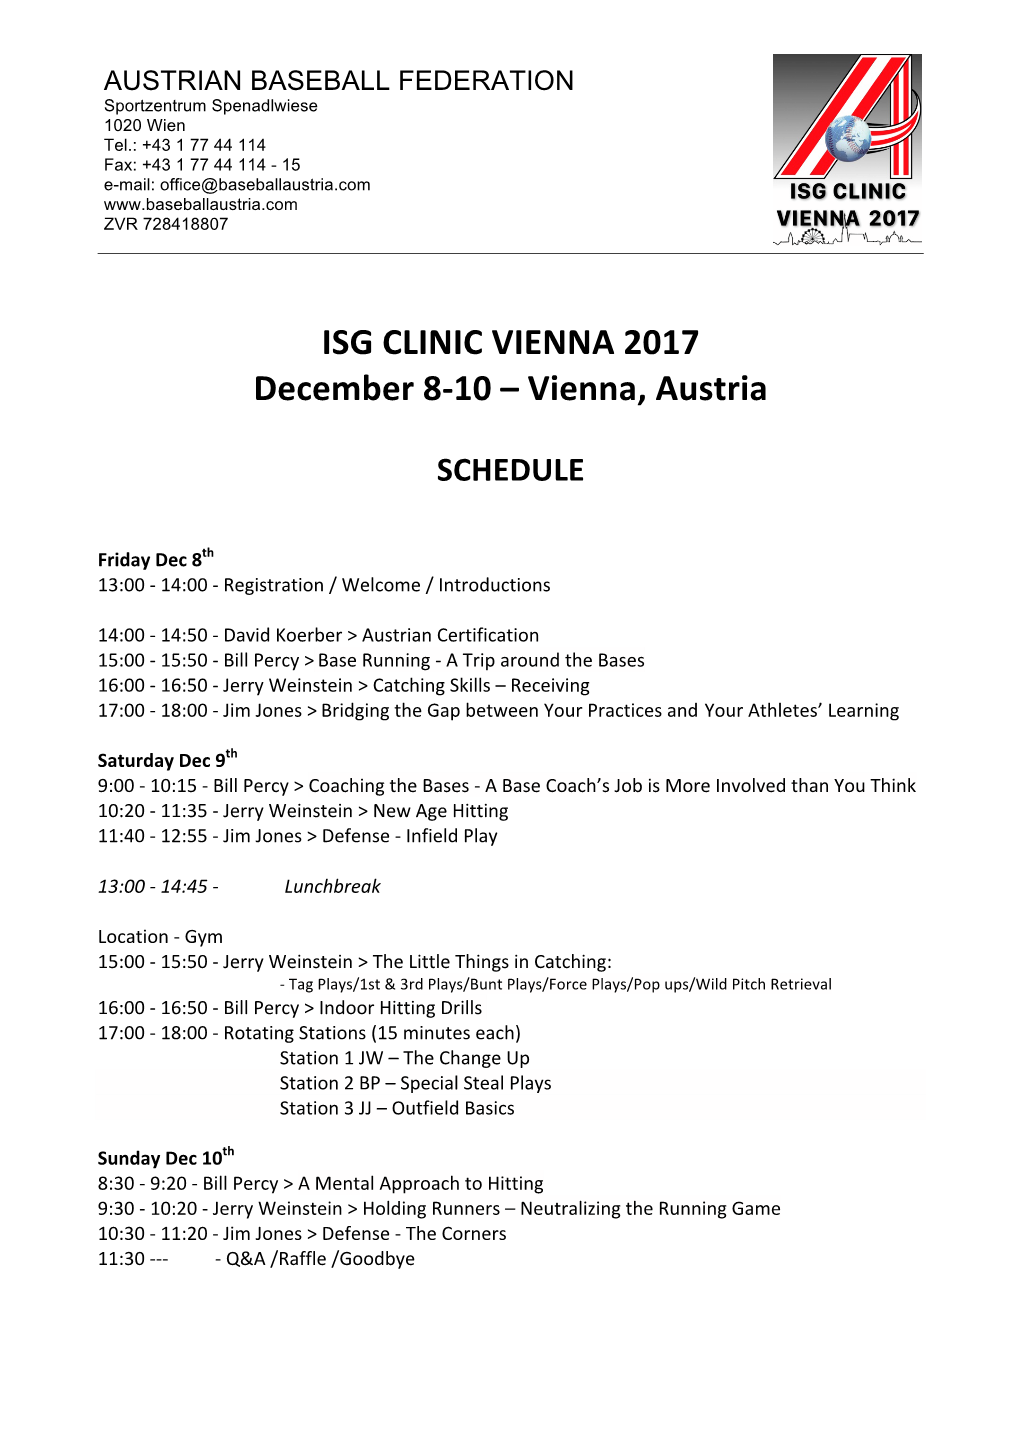 ISG CLINIC VIENNA 2017 December 8-10 – Vienna, Austria